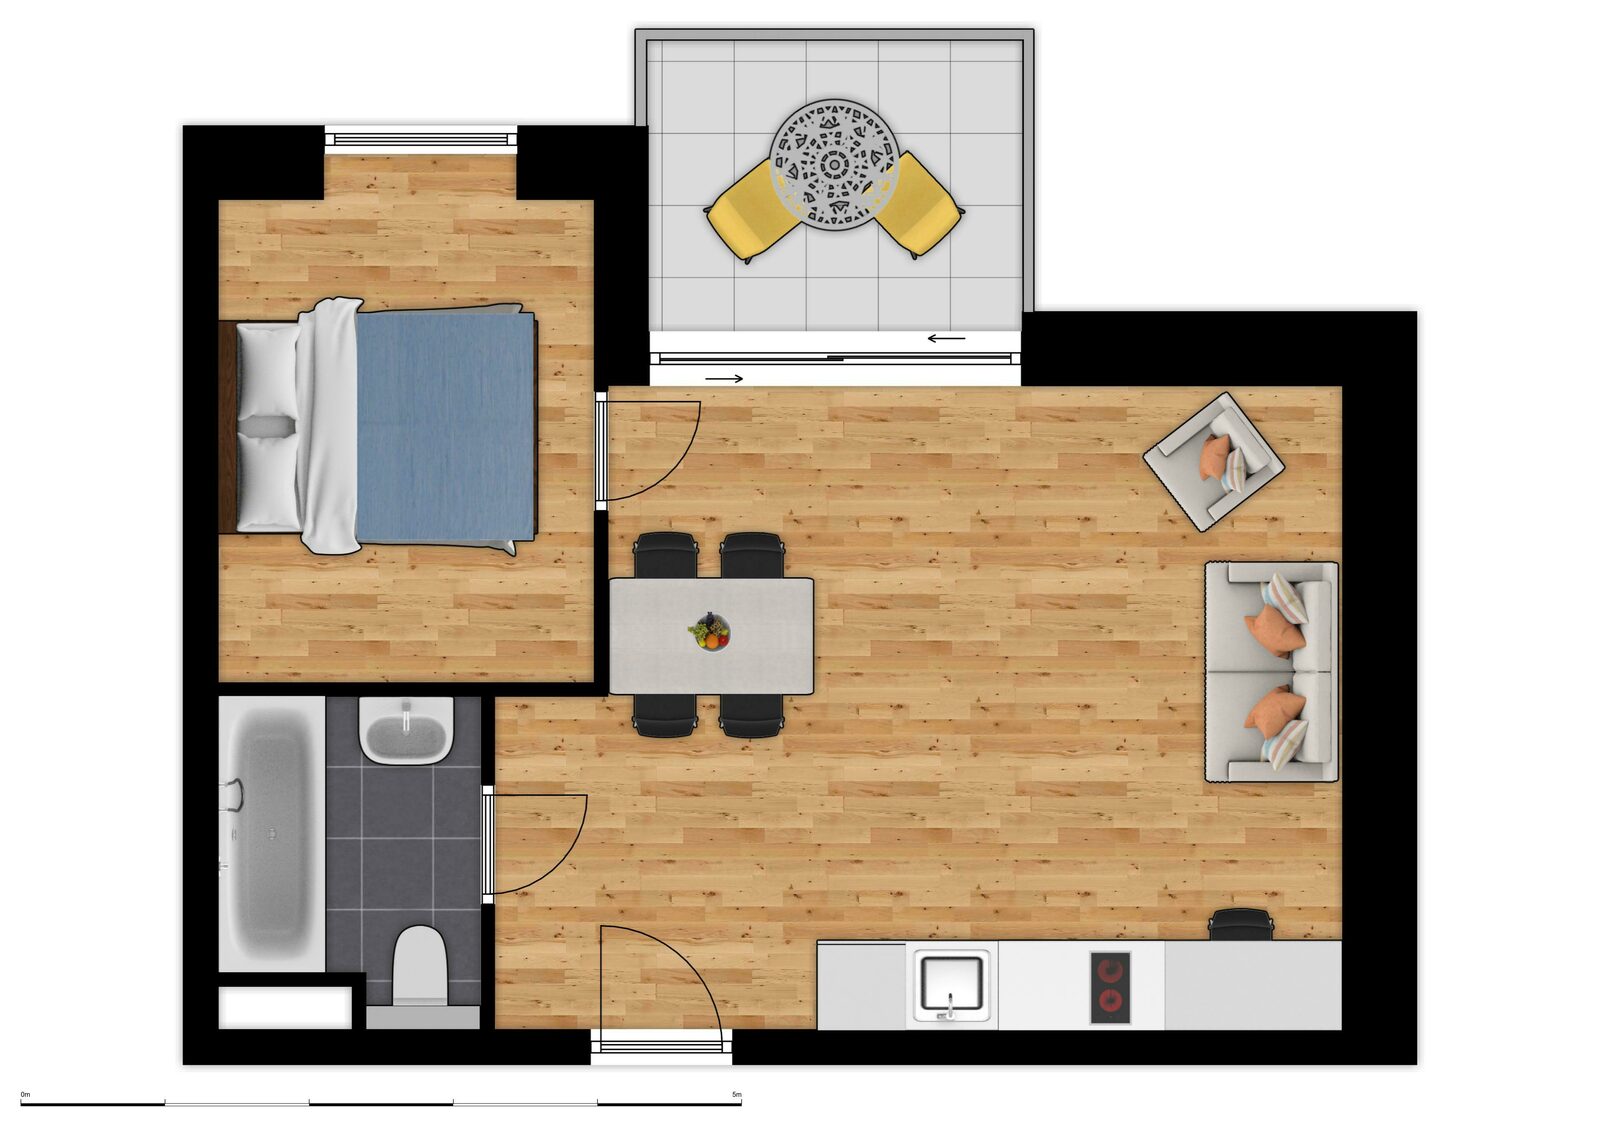 Comfort Suite - 4p | Bedroom - Sofa bed